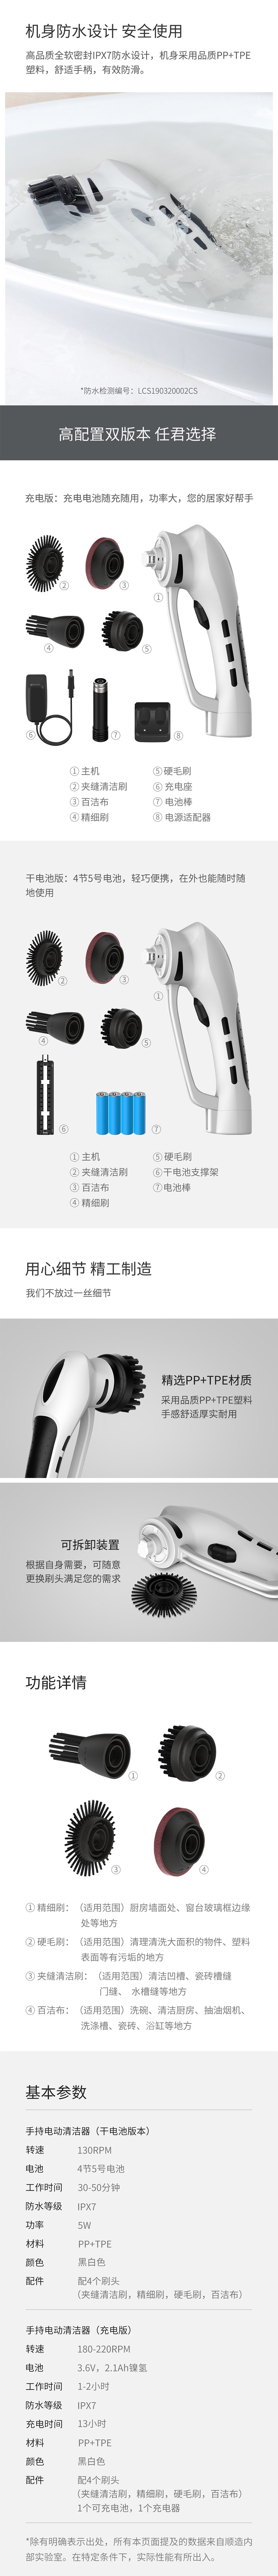 【中国直邮】小米有品 顺造无线手持电动清洁机(充电版)FD-ESC(A)黑白色